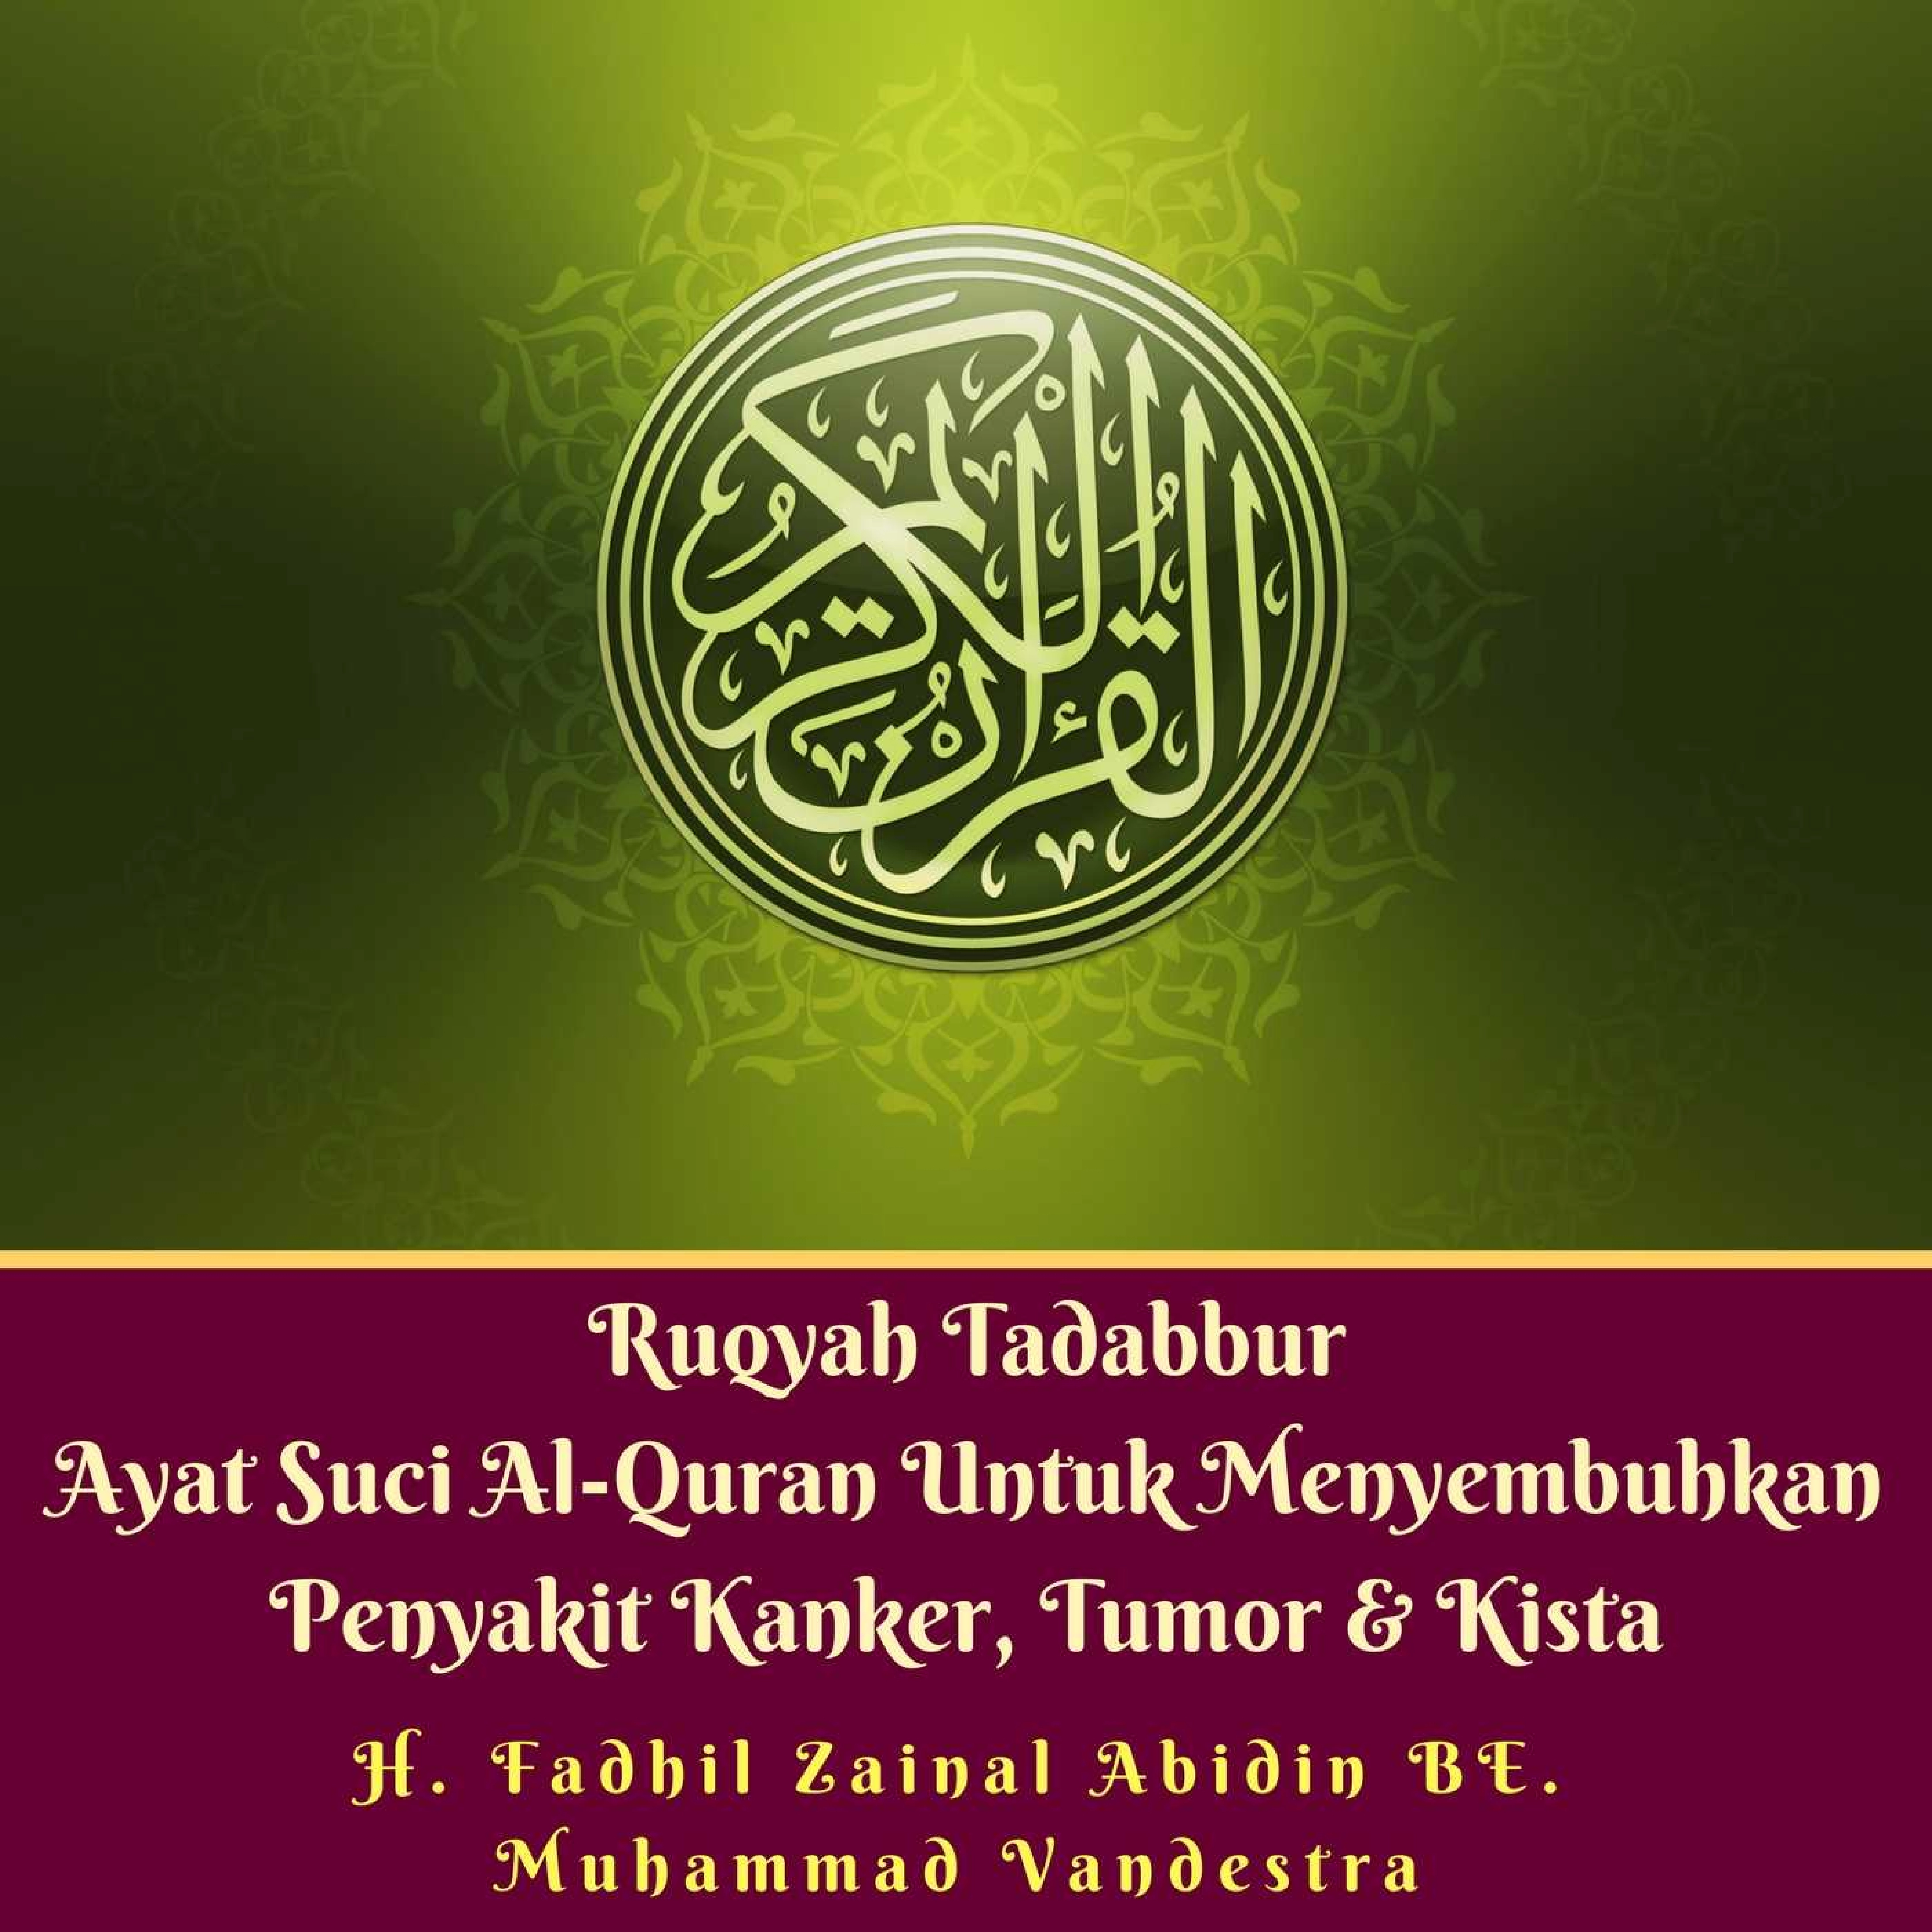 Ruqyah Tadabbur Ayat Suci Al-Quran Untuk Menyembuhkan Penyakit Kanker, Tumor & Kista Audiobook by H. Fadhil Zainal Abidin BE.